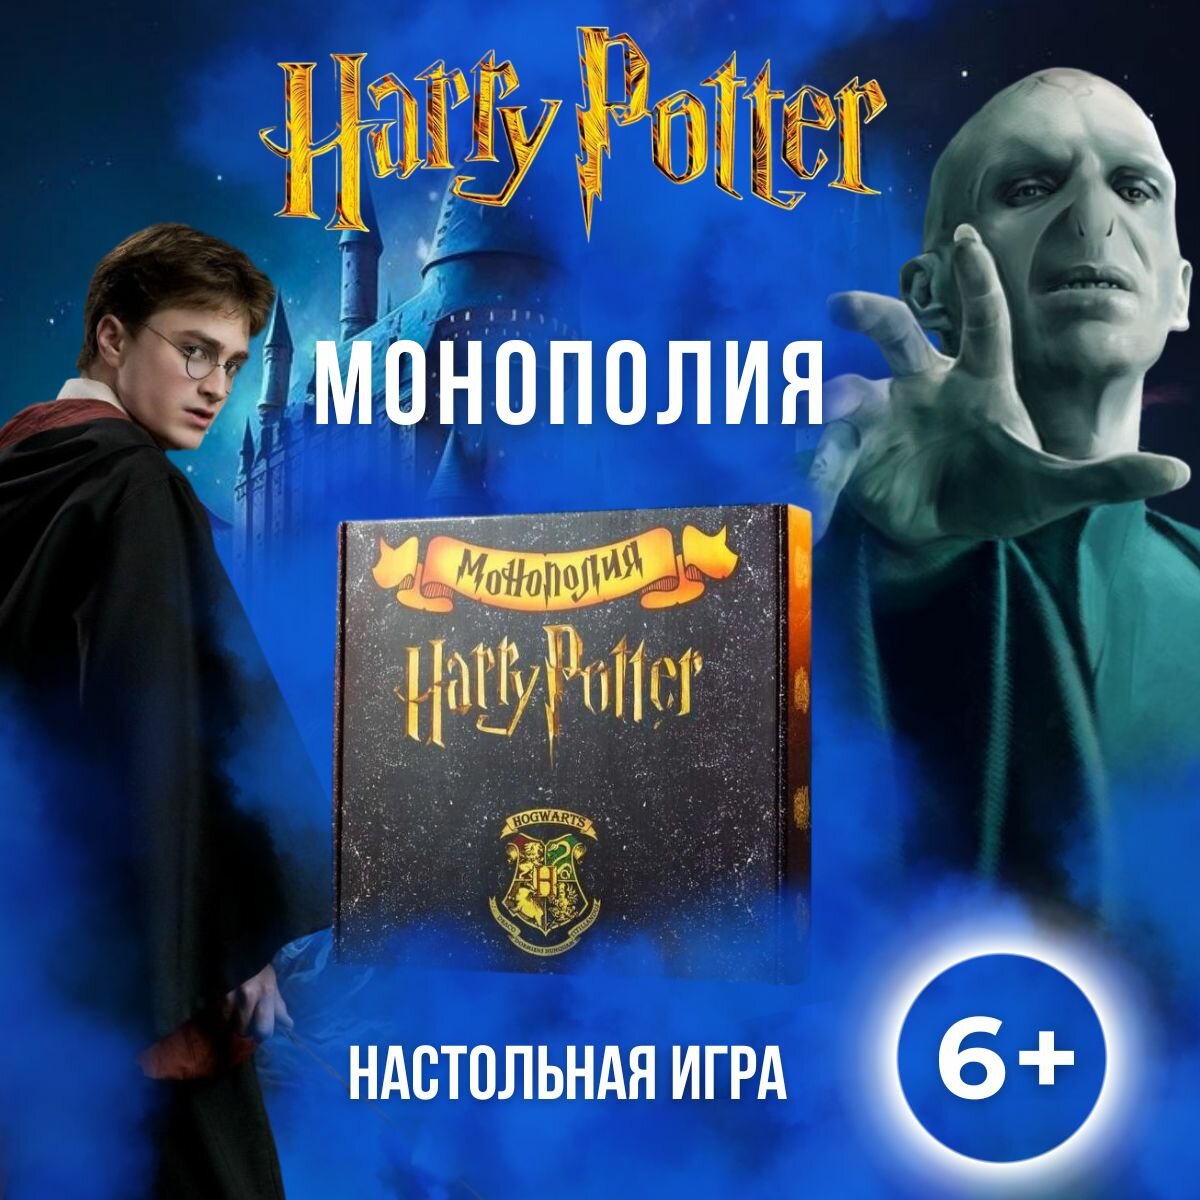 Настольная игра монополия HARRY POTTER Hogwarts